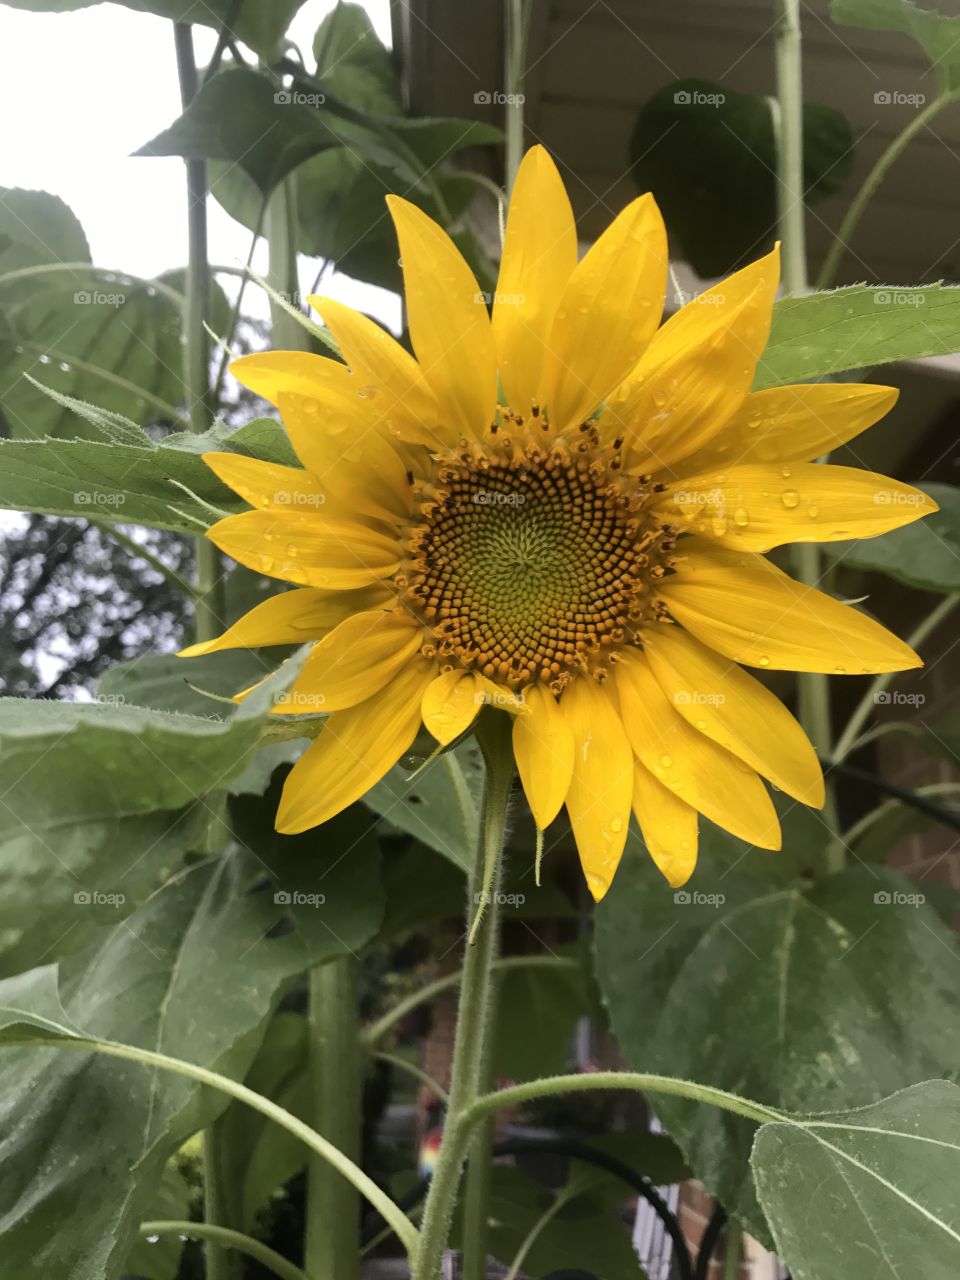 Smiley sun flower 